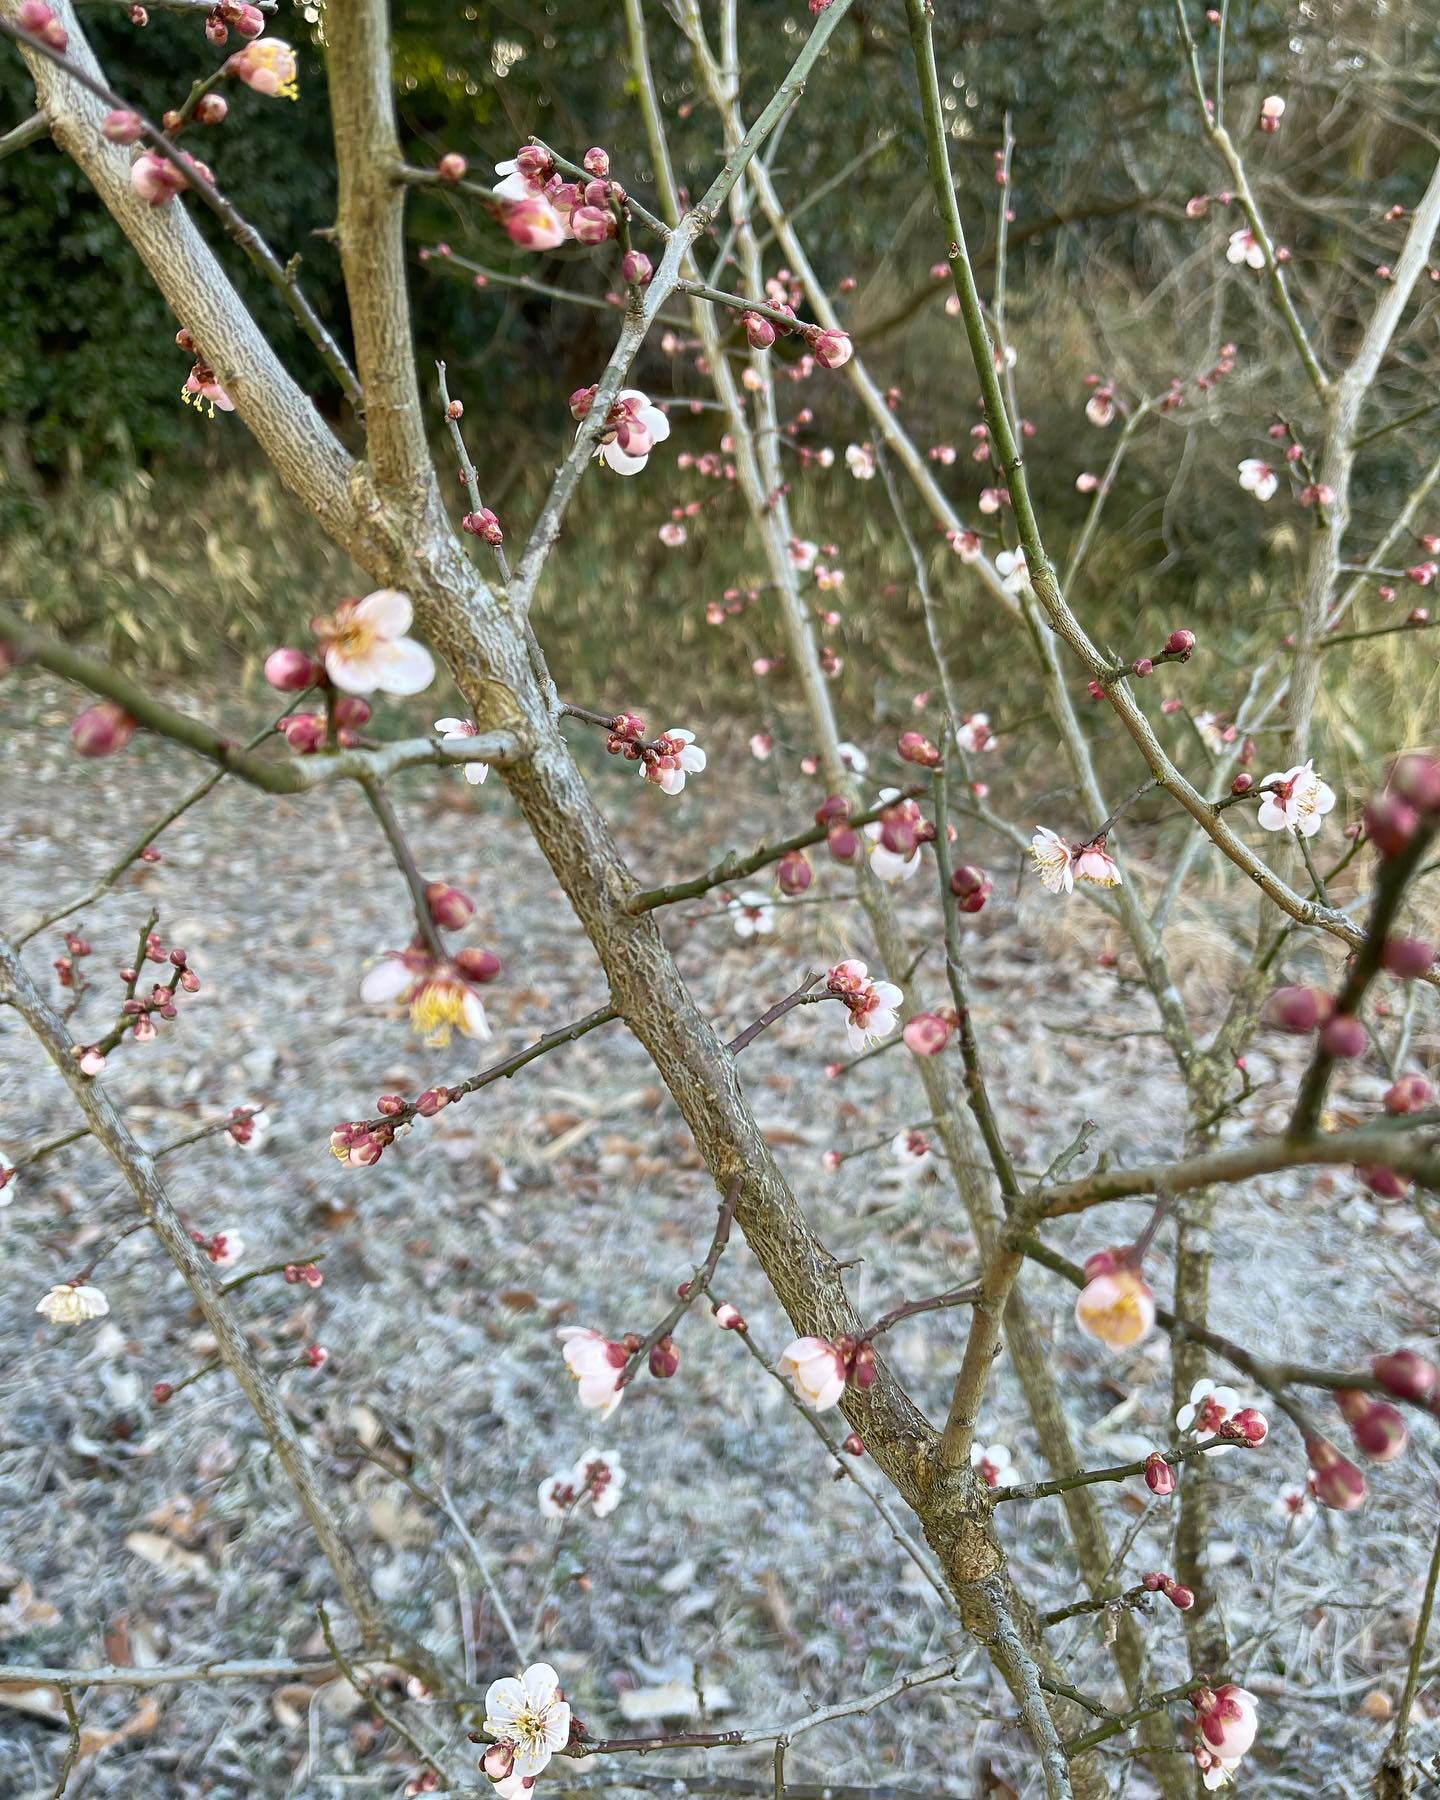 本日久しぶりに畑に行きました。白菜は凍ってましましたが大根は成長してて程よい大きさになってました。梅の花も咲いてて綺麗でした(^^) #コレーグ #豊中 #就労継続支援b型  #障害福祉 #白菜 #大根 #梅の花